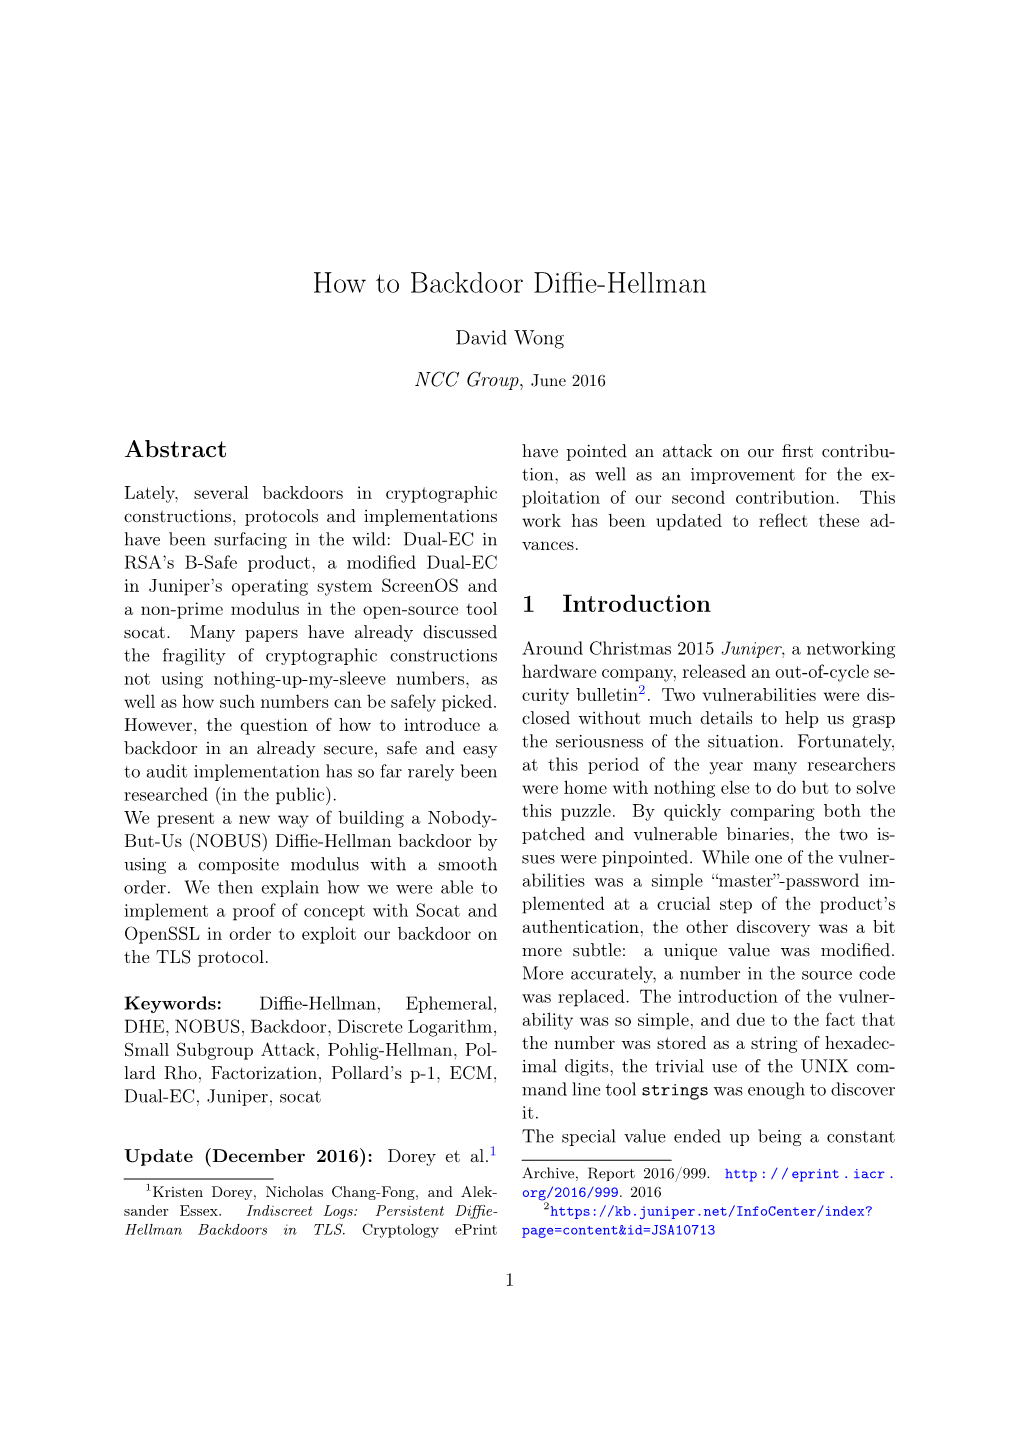 How to Backdoor Diffie-Hellman